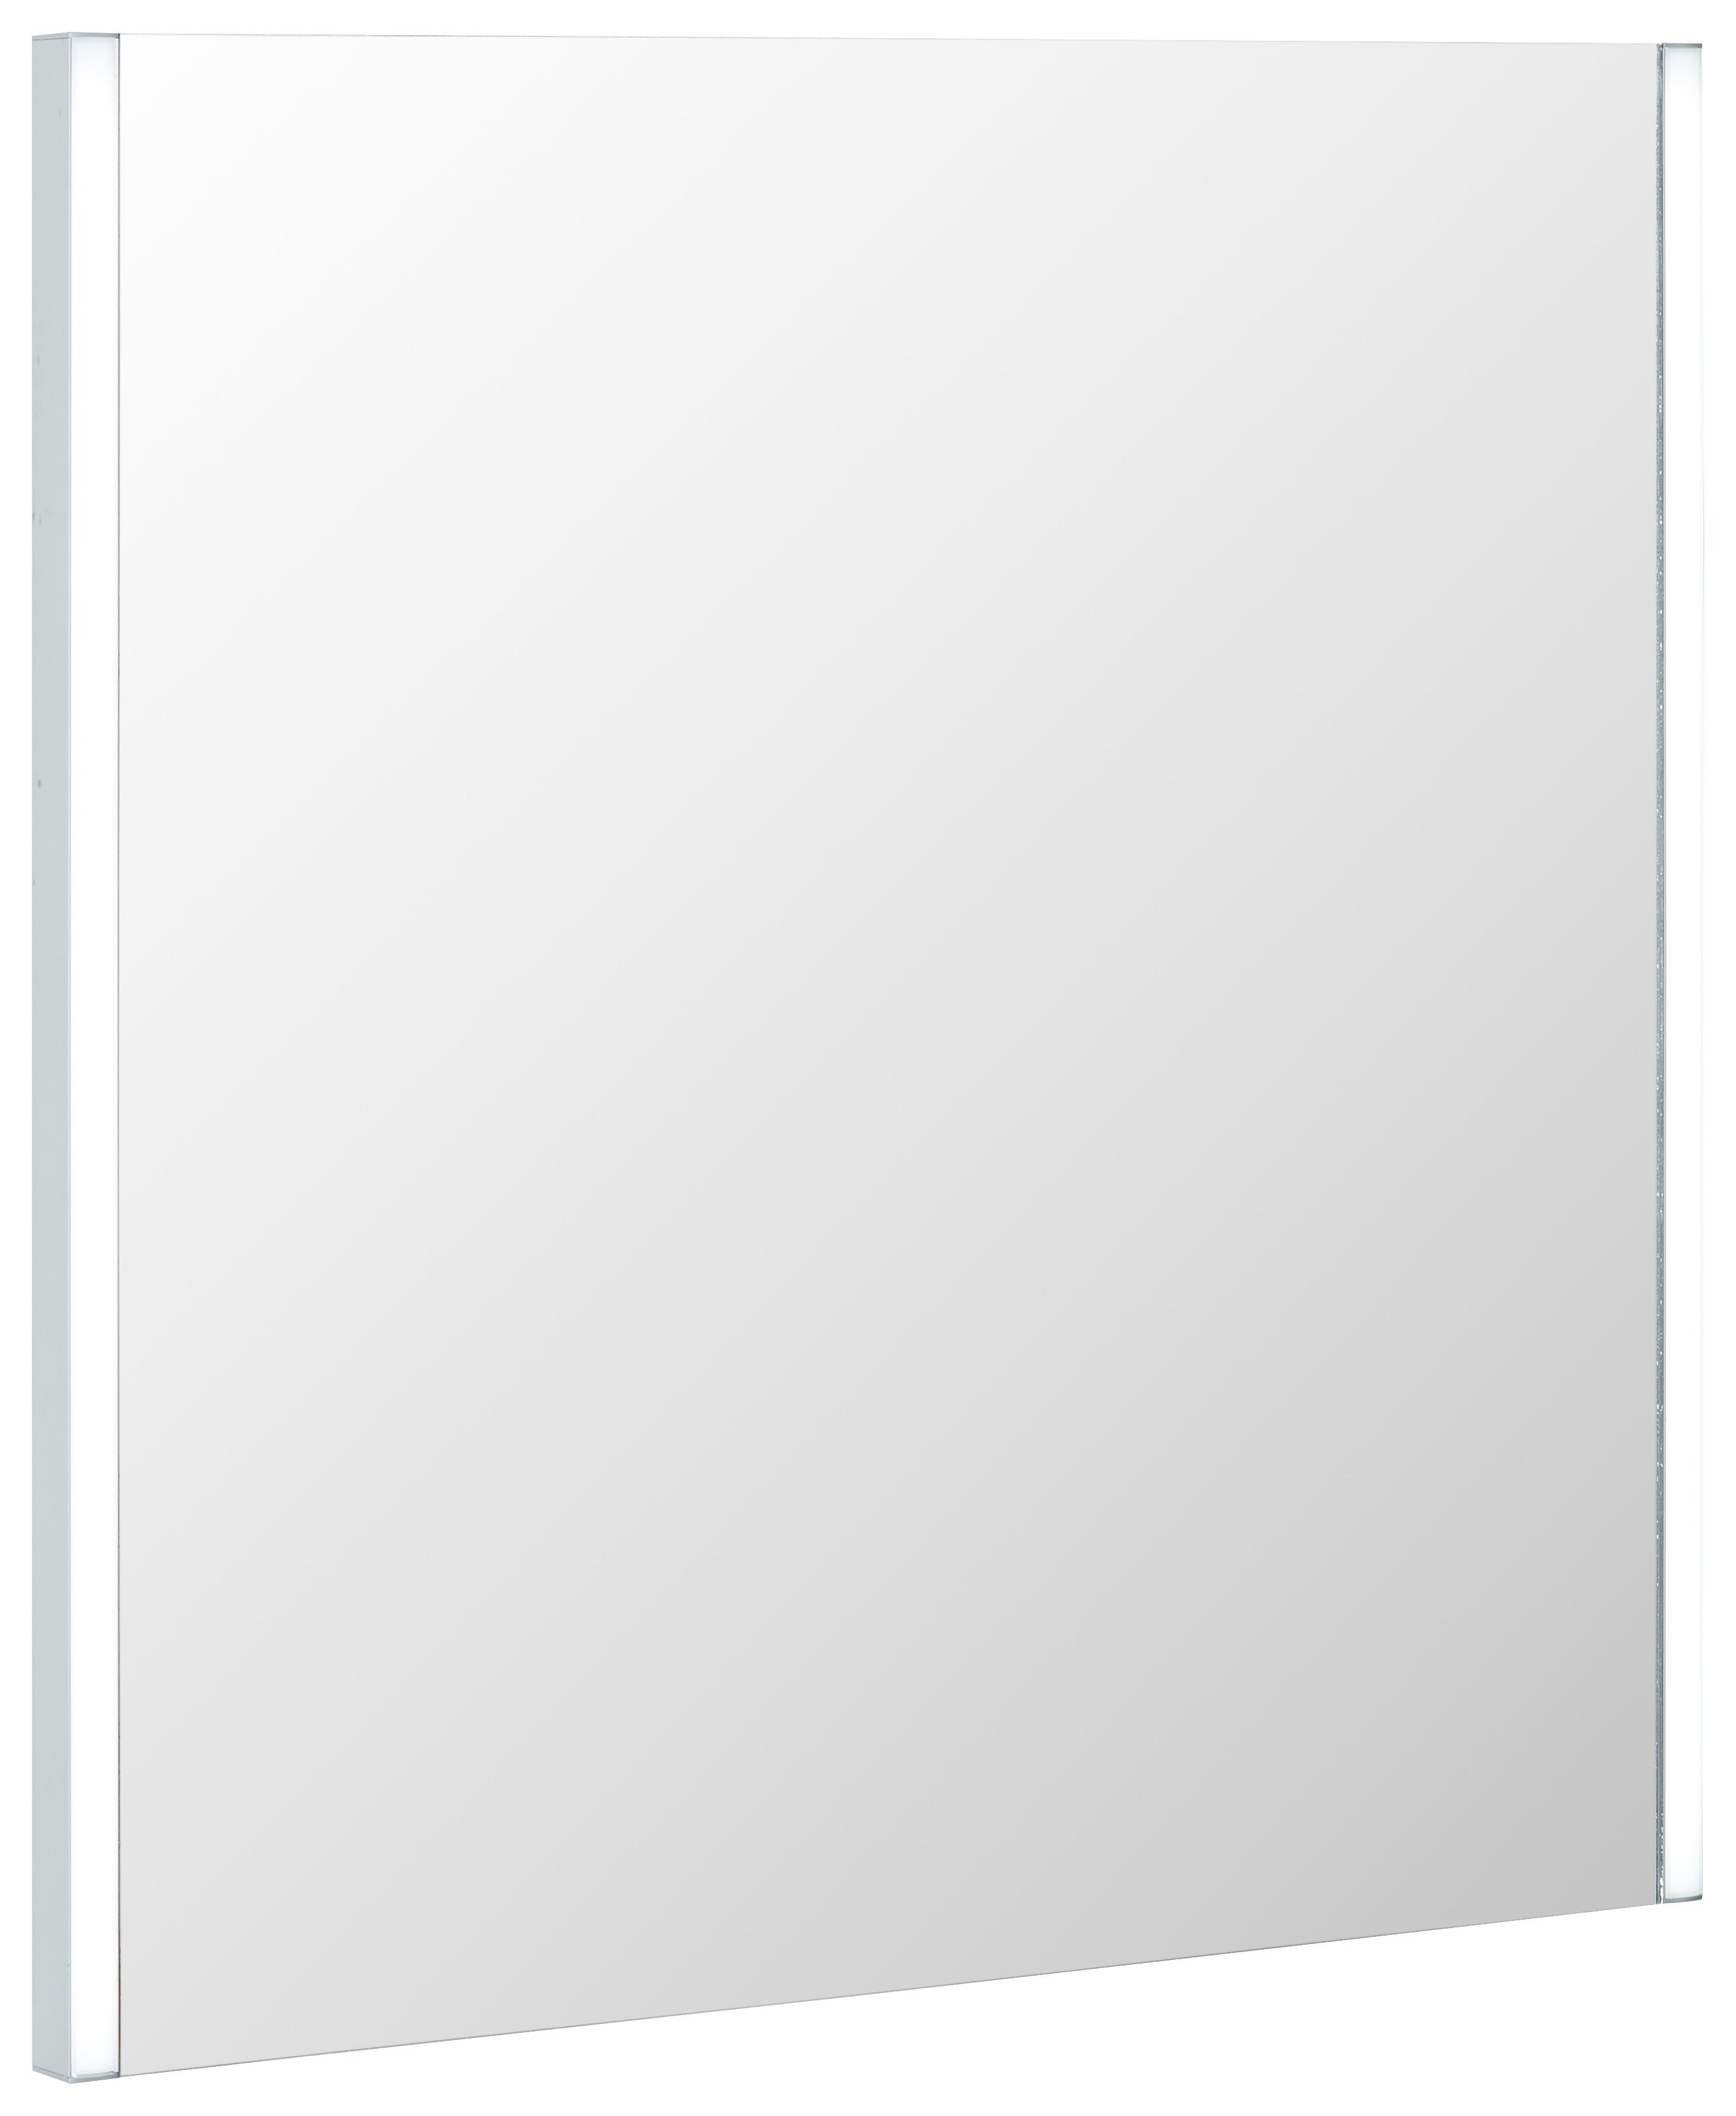 Leuchtspiegel in Weiß ca. 63x65cm - MODERN, Glas (63/65/3cm) - Modern Living